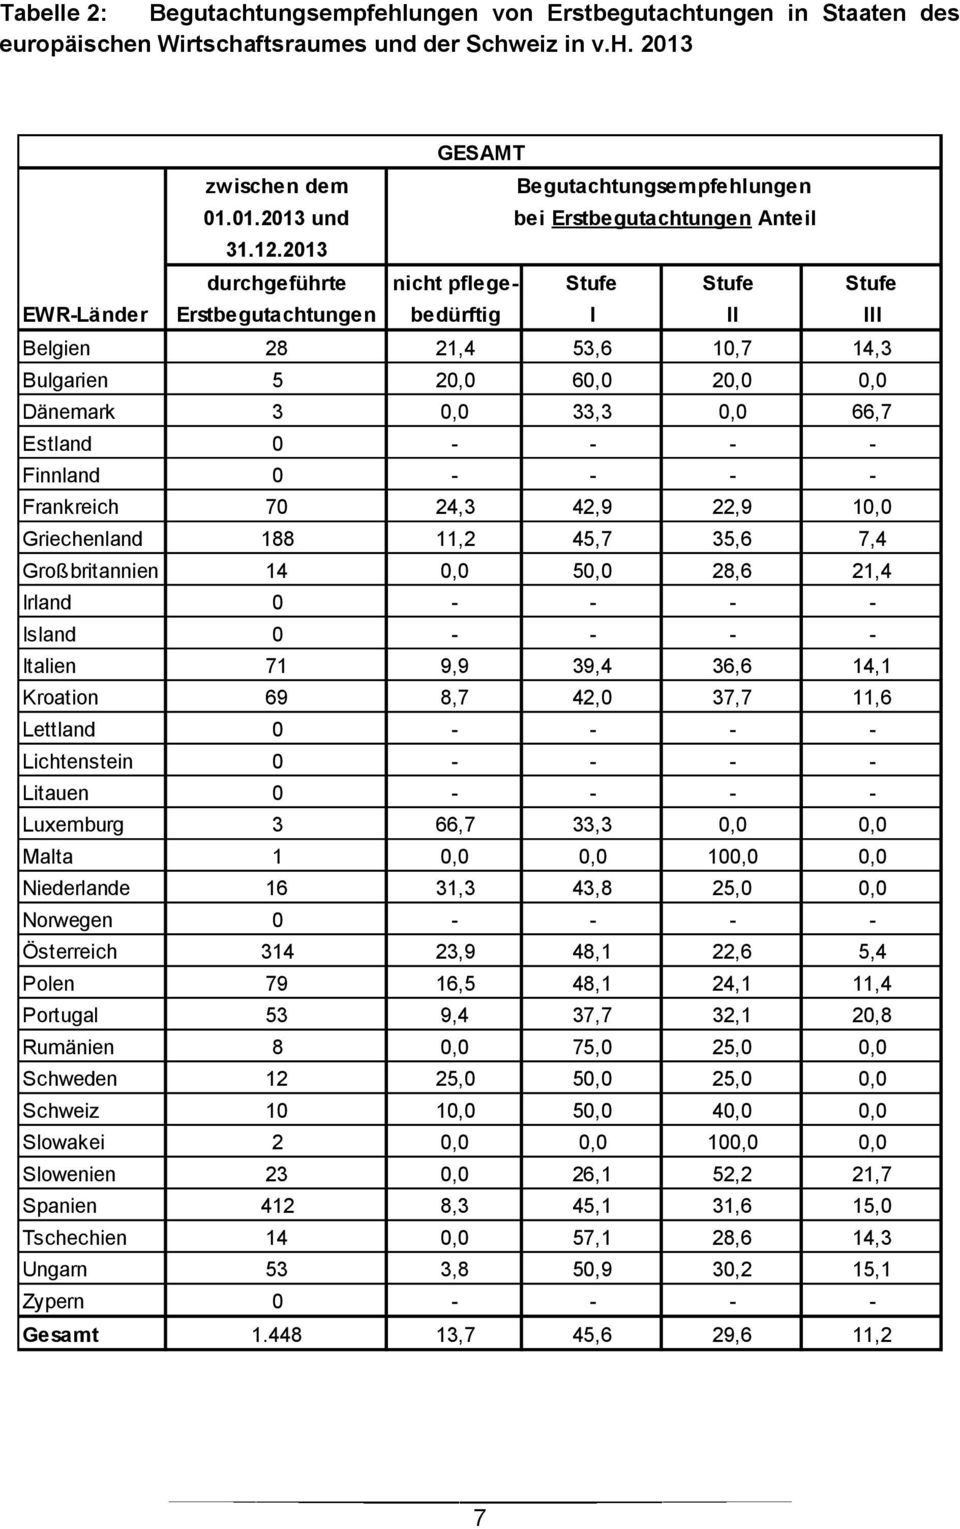 2013 durchgeführte nicht pflege- Stufe Stufe Stufe EWR-Länder Erstbegutachtungen bedürftig I II III Belgien 28 21,4 53,6 10,7 14,3 Bulgarien 5 20,0 60,0 20,0 0,0 Dänemark 3 0,0 33,3 0,0 66,7 Estland